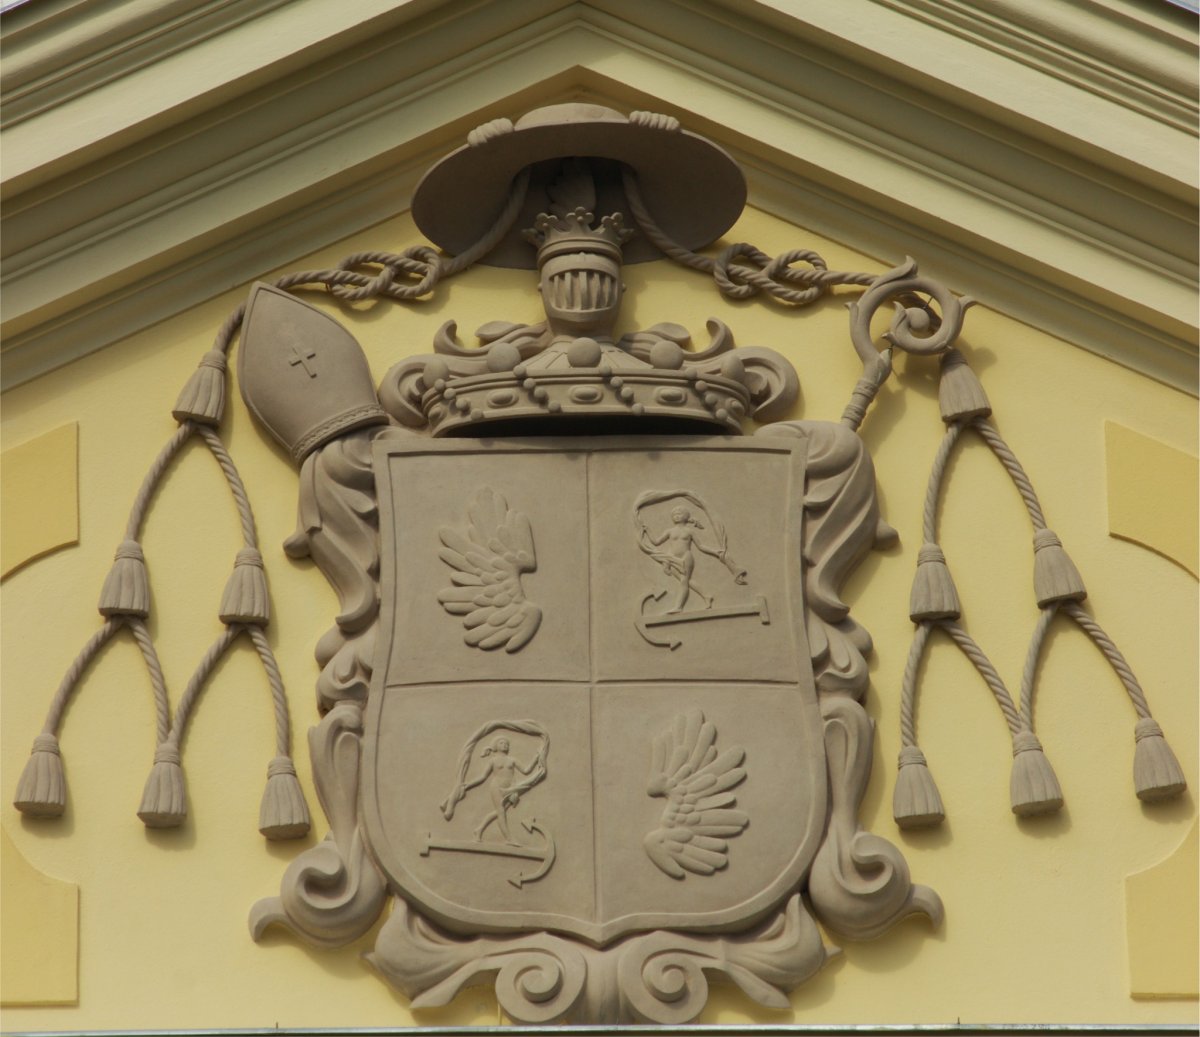 Megkoronázott helyreállítás: visszakerült a címer a váradi püspöki palotára